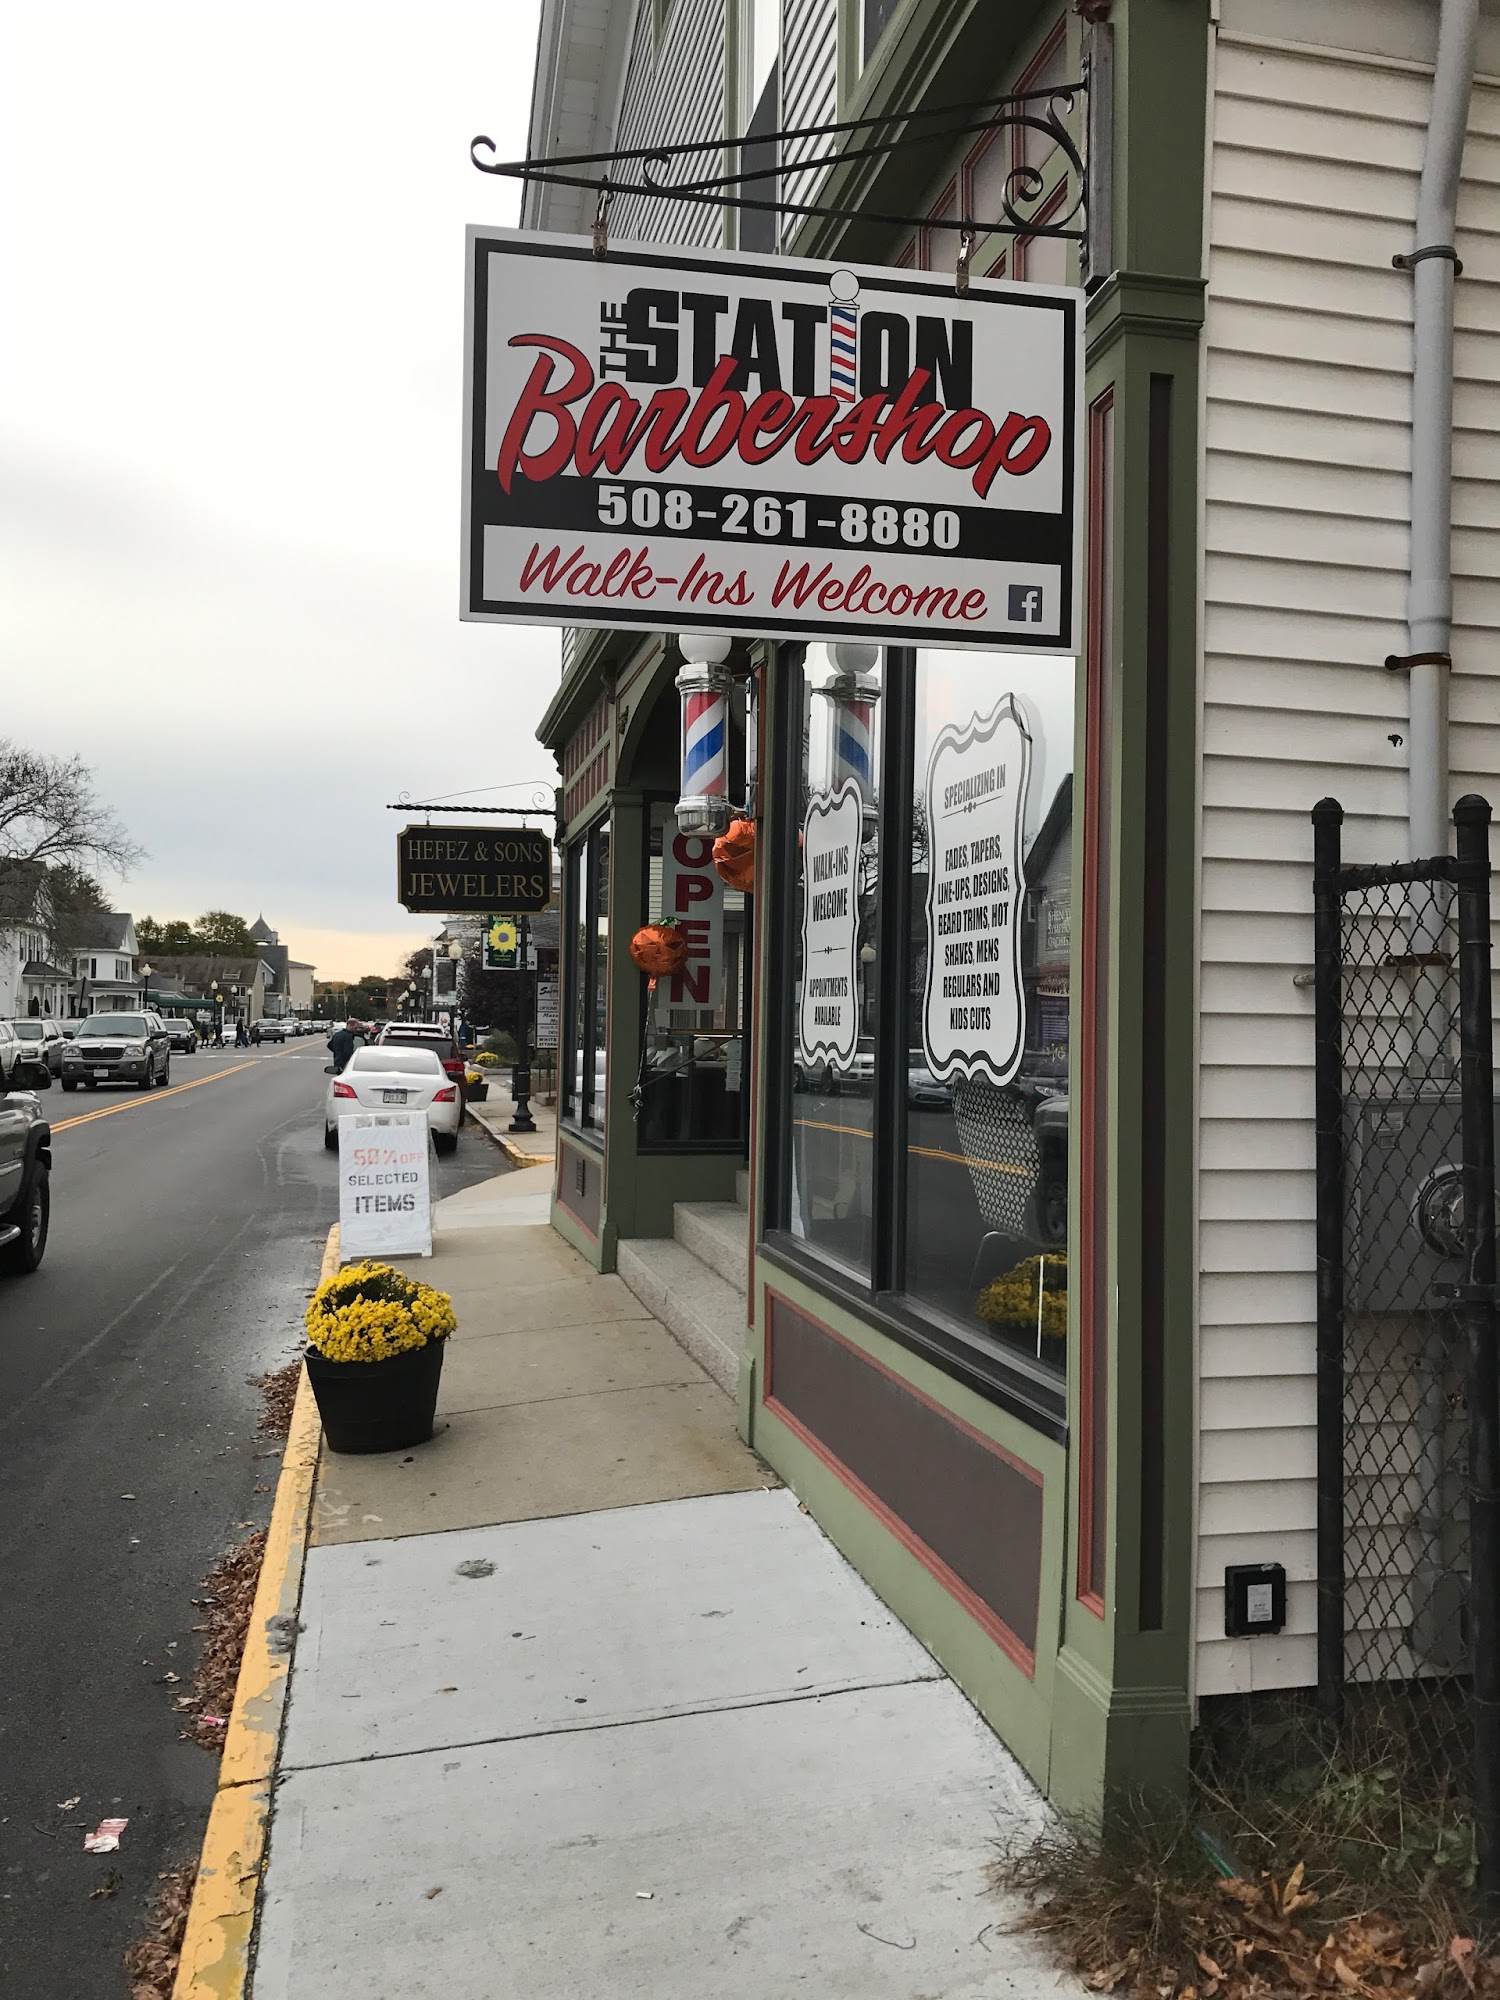 The Station Barber Shop